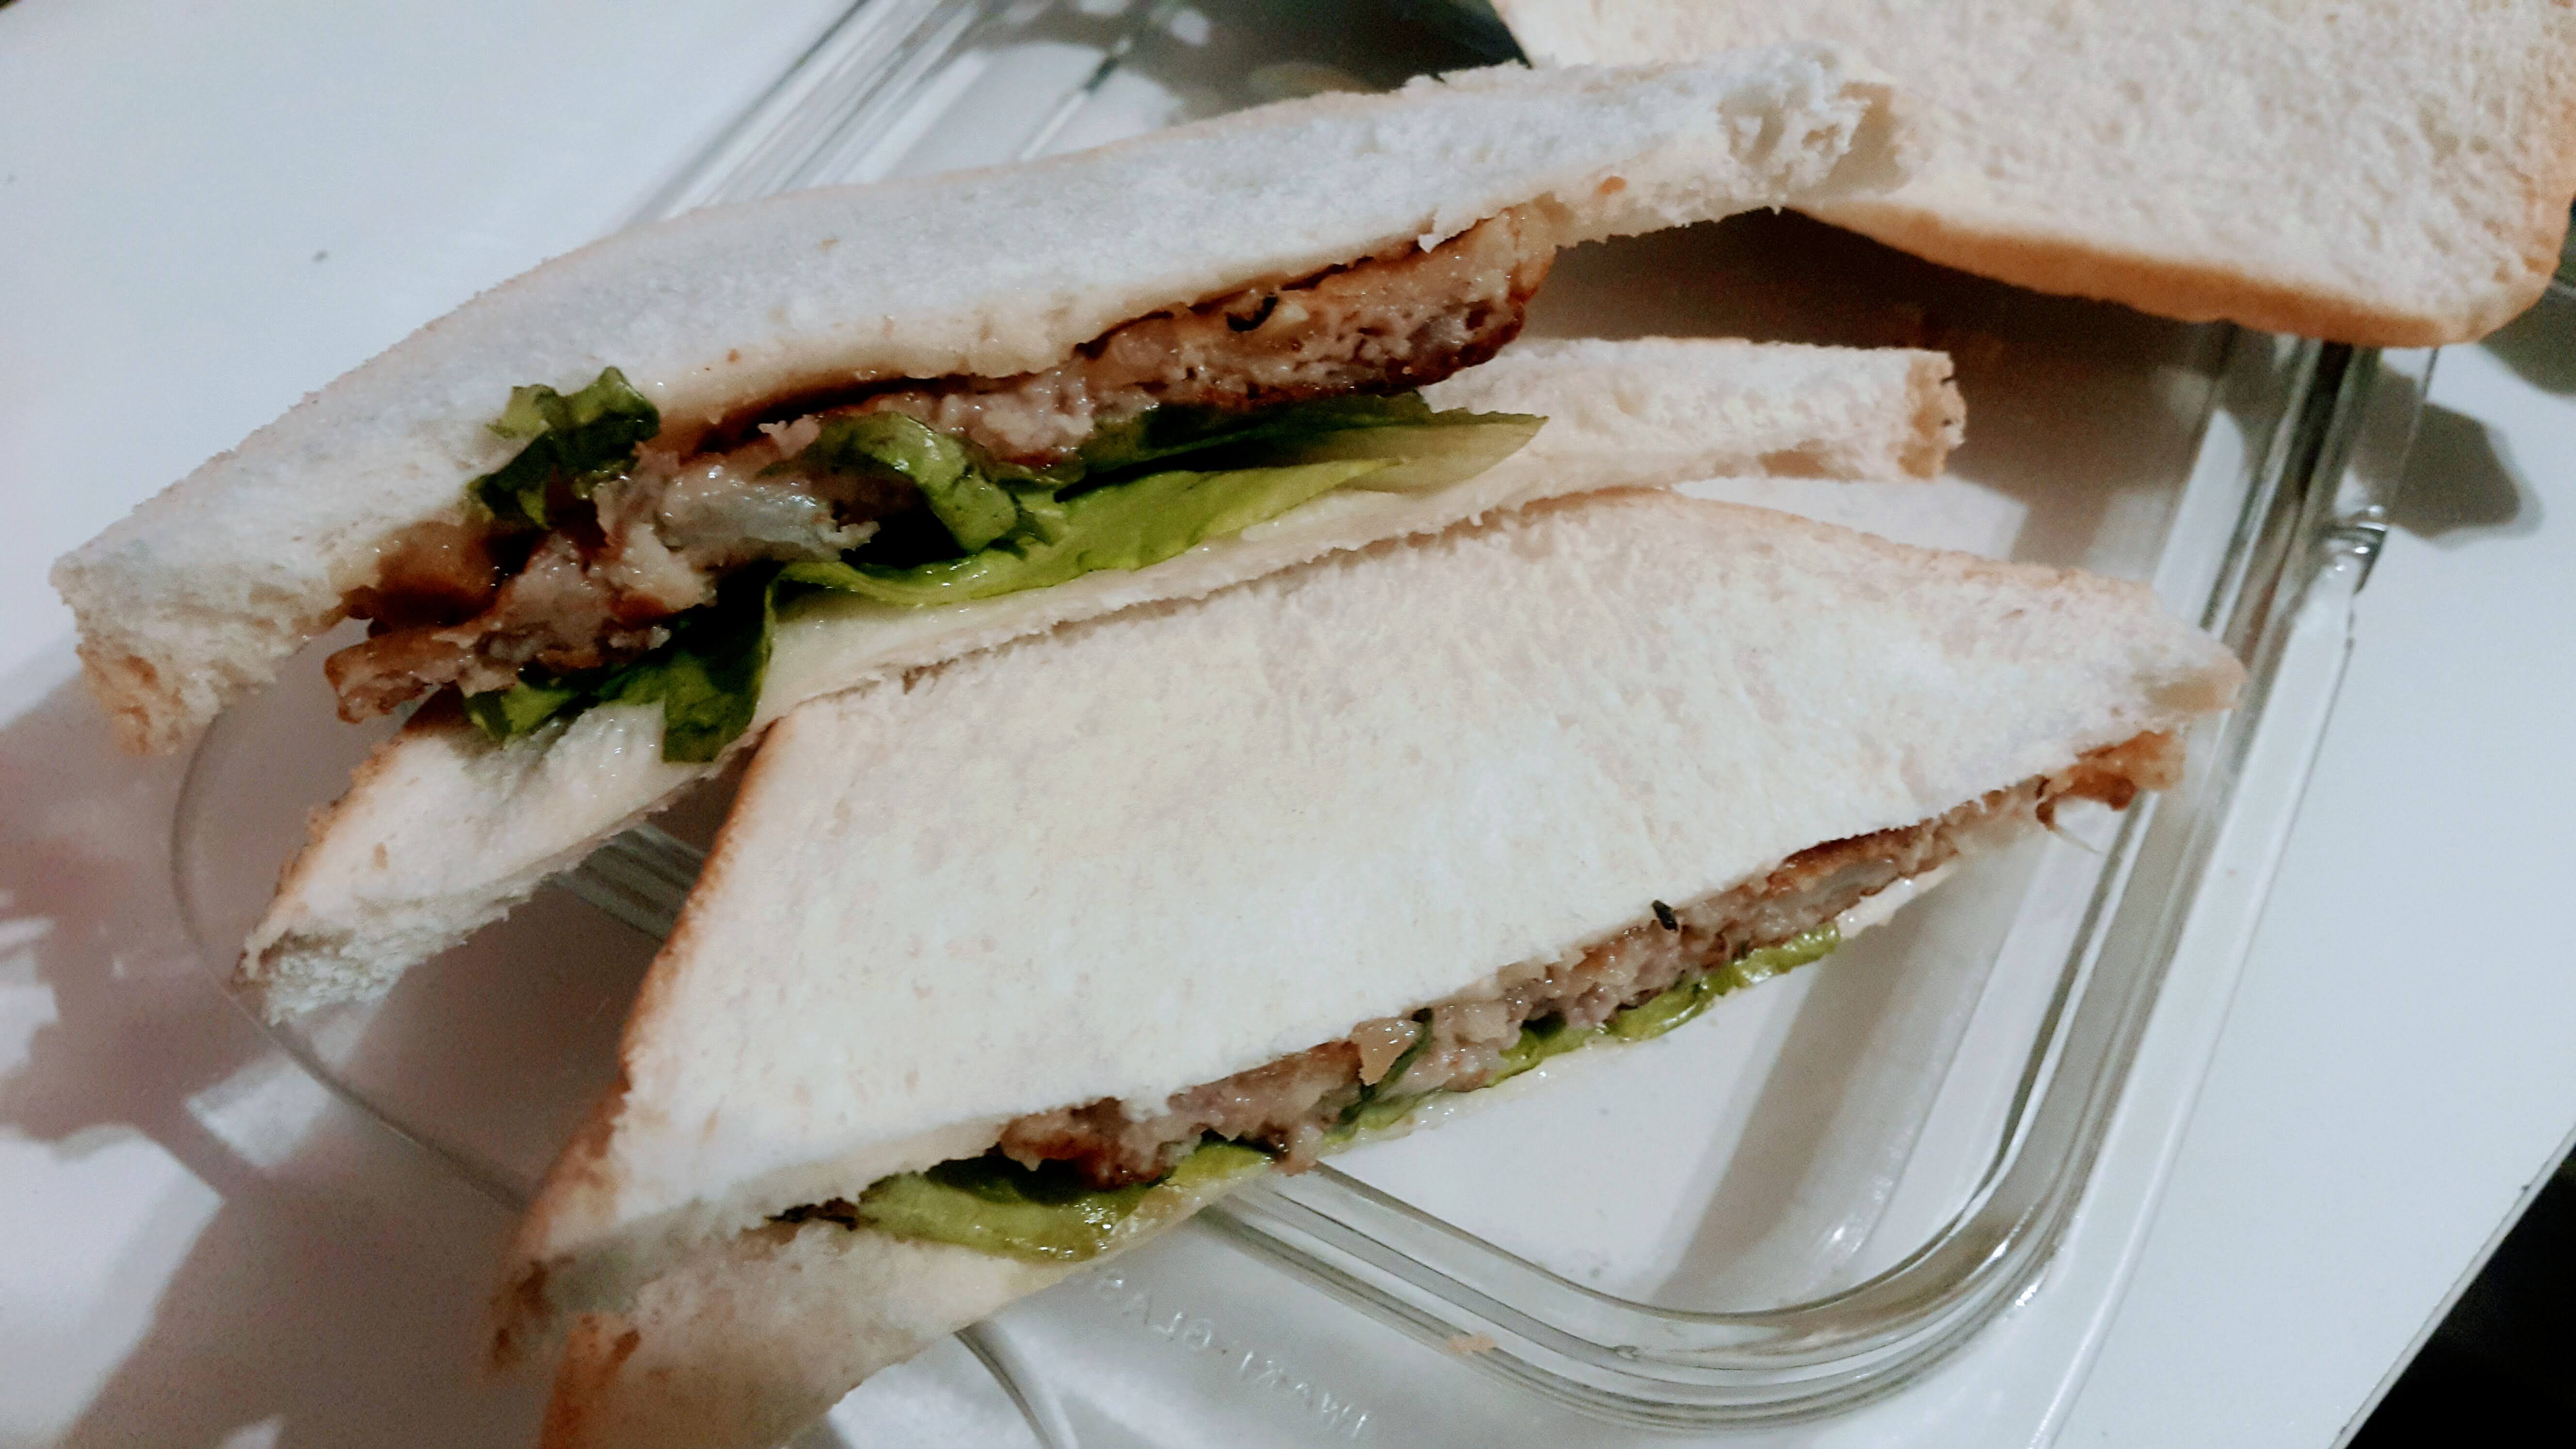 Pork patty sandwich triangular cut